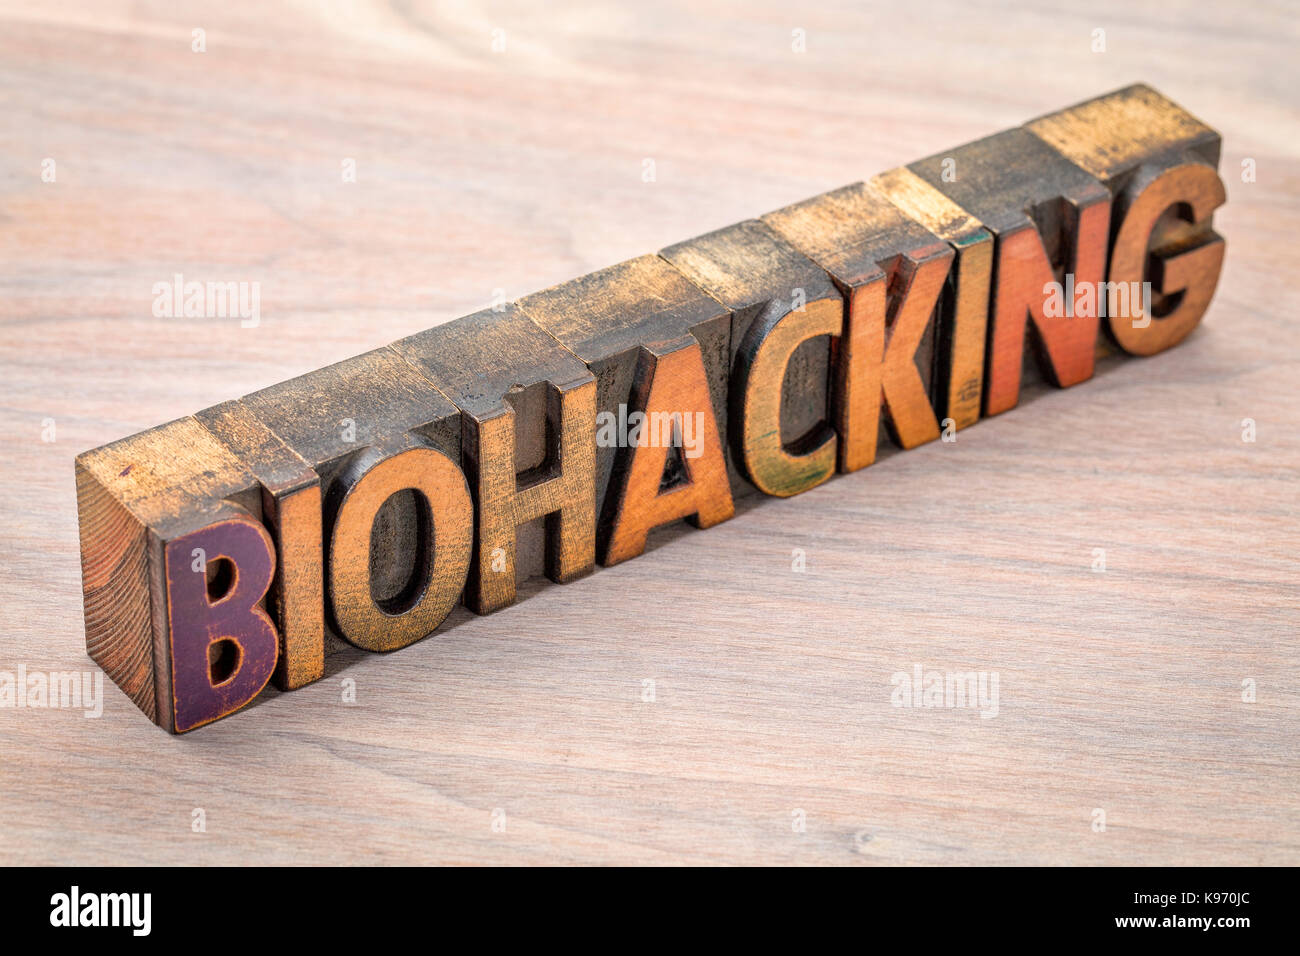 Biohacking - Verwalten der eigenen Biologie mit einer Kombination aus Medizin, Ernährungs- und elektronischen Techniken - Wort Zusammenfassung im Buchdruck Holz typ Stockfoto